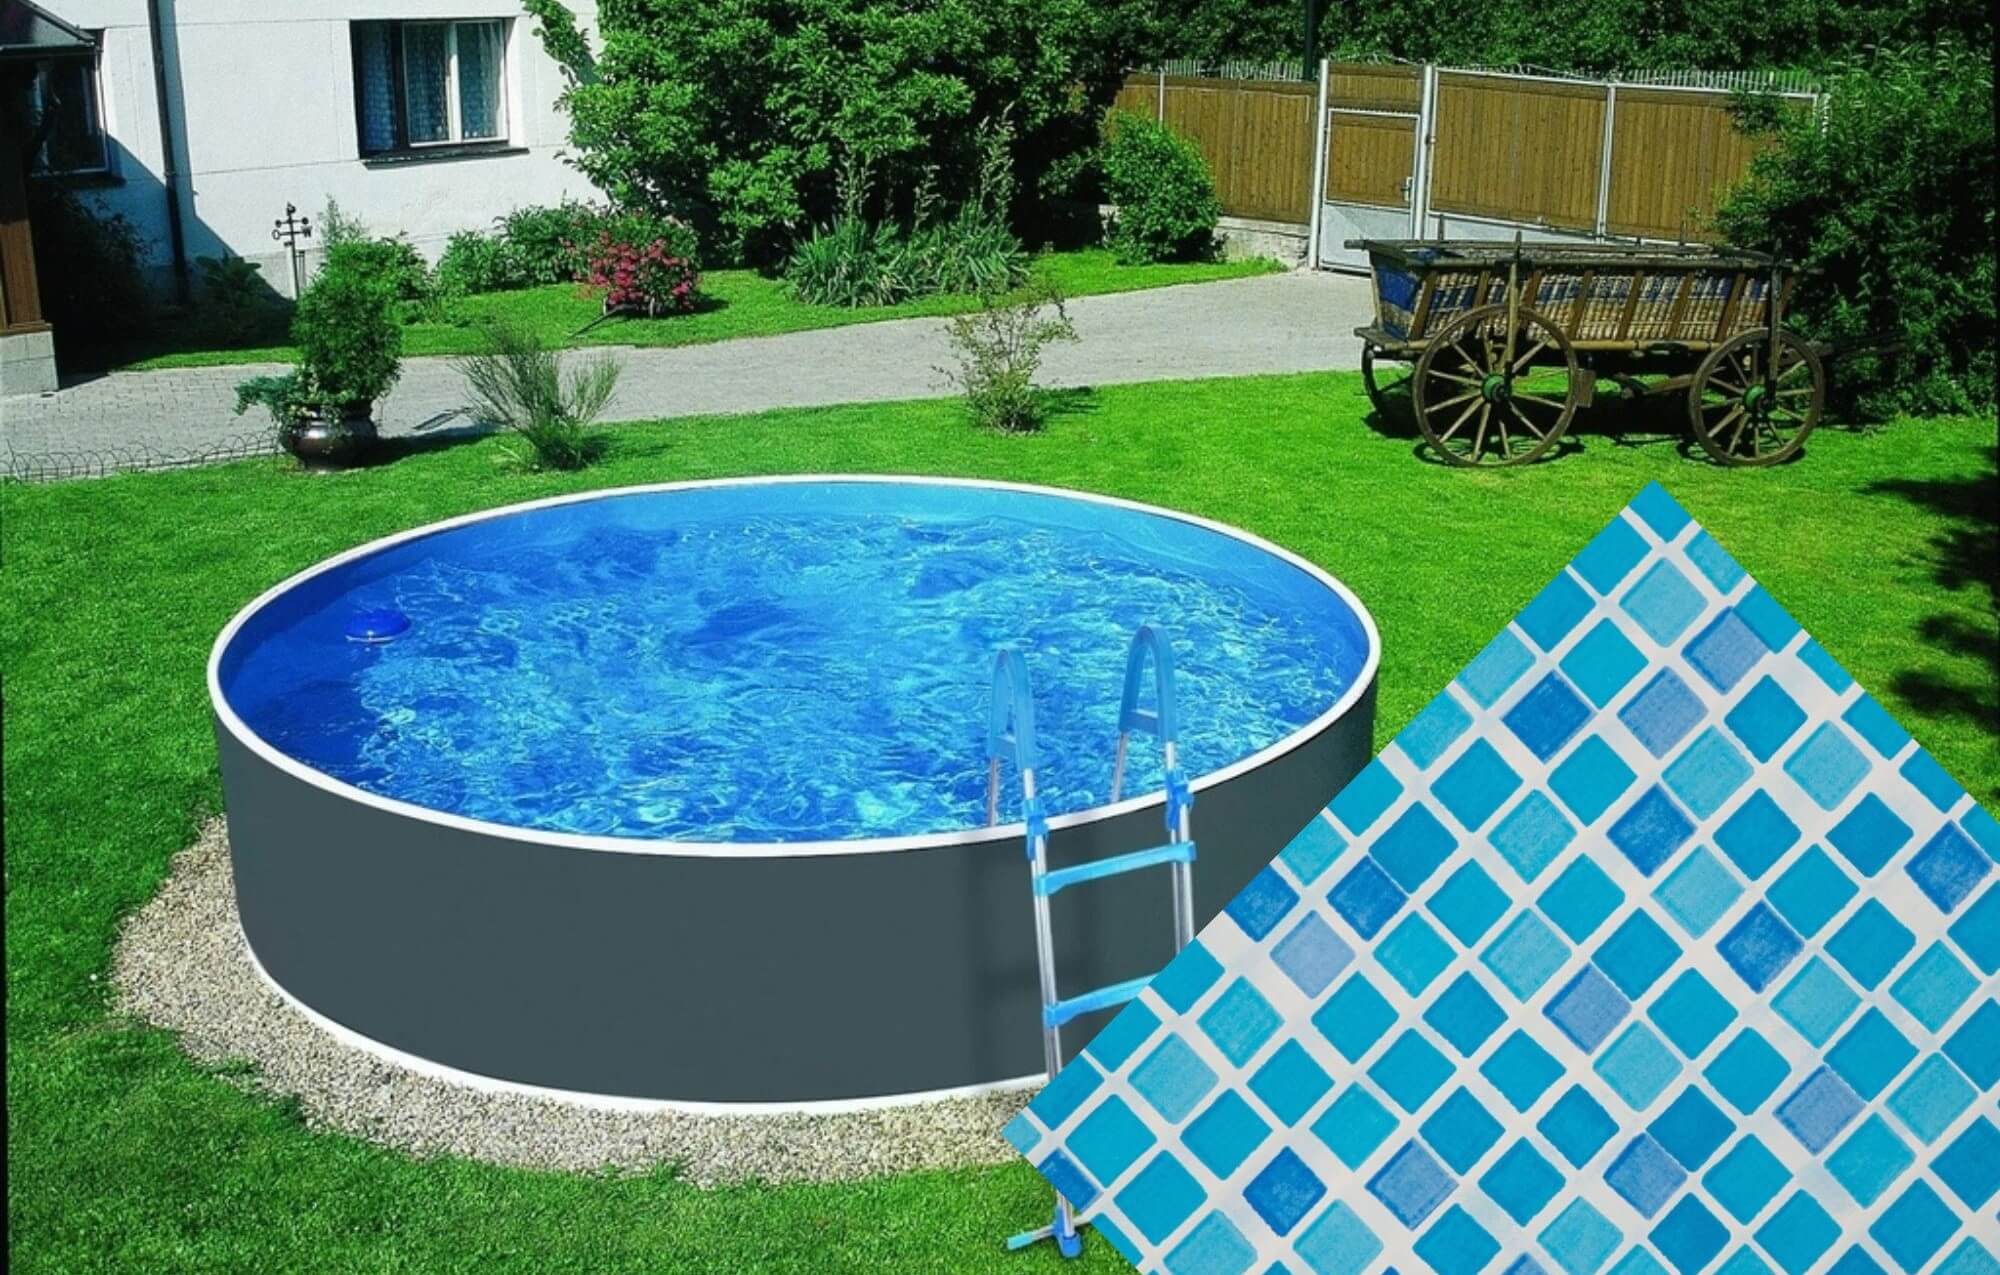 Planet Pool Náhradní bazénová fólie Mosaic pro bazén průměr 3,6 m x 0,92 m